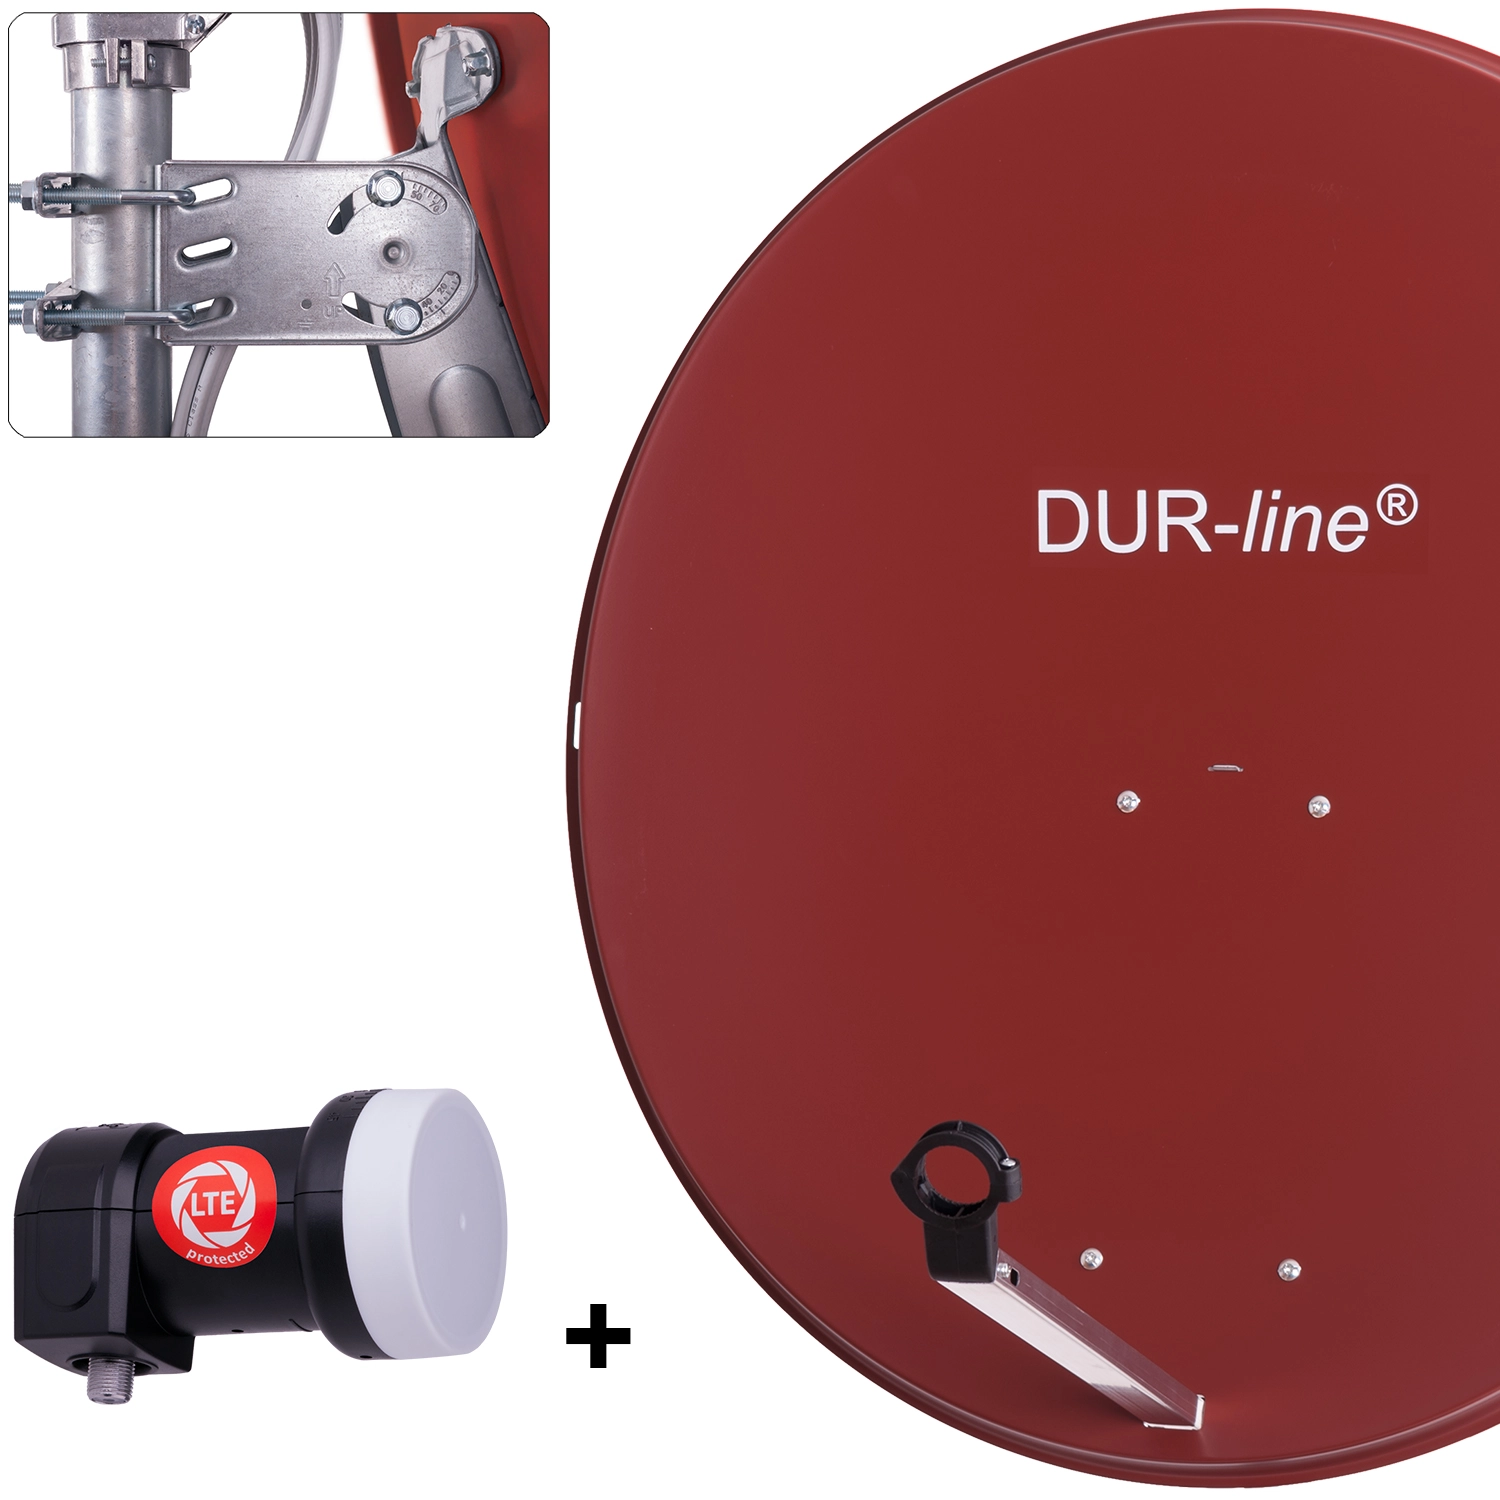 DUR-line MDA 90 R + +Ultra Single LNB - 1 TN LNB Set